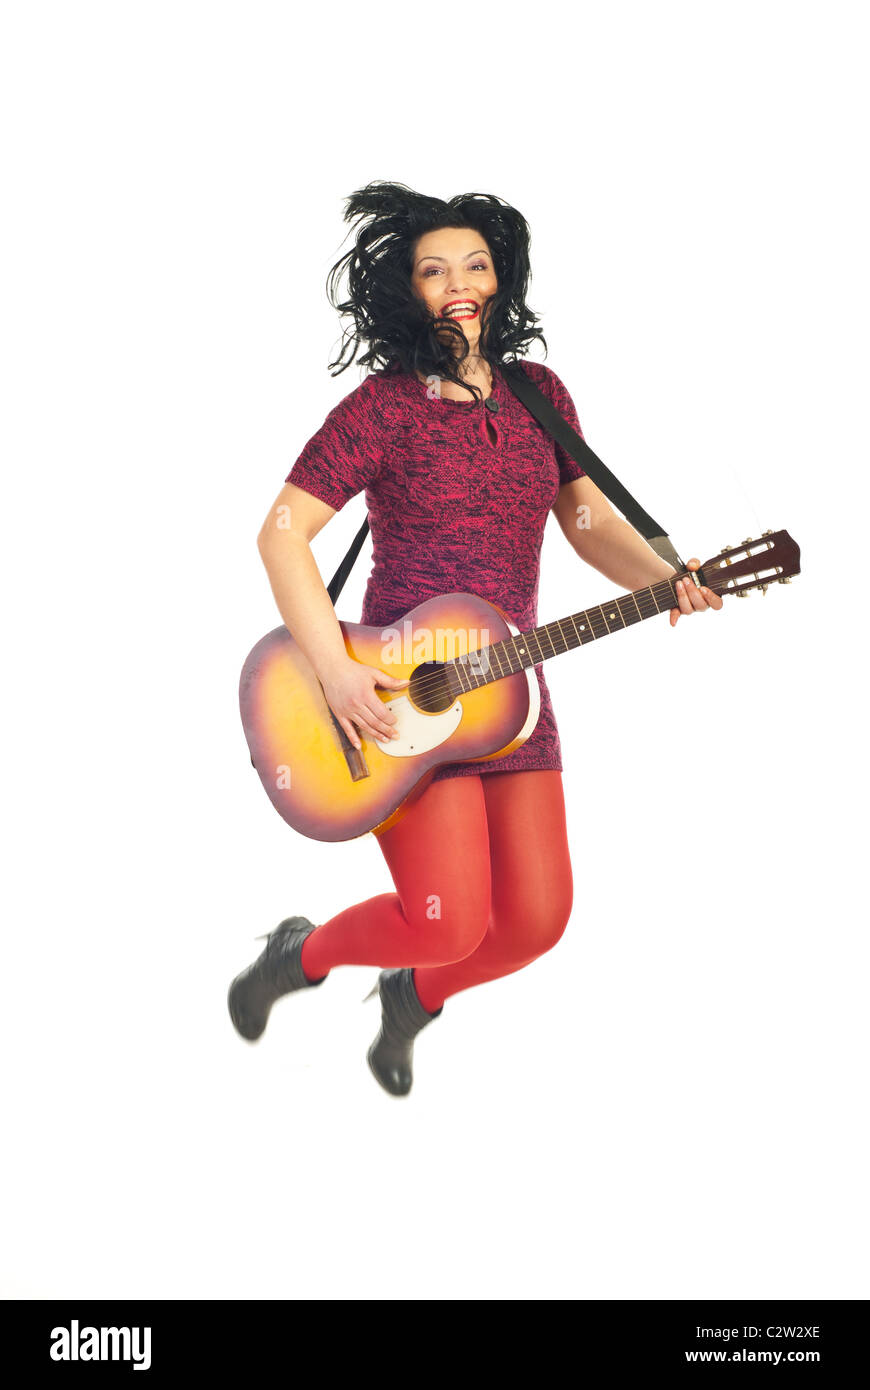 Allegro chitarrista donna jumping e tenendo la chitarra isolato su sfondo bianco Foto Stock